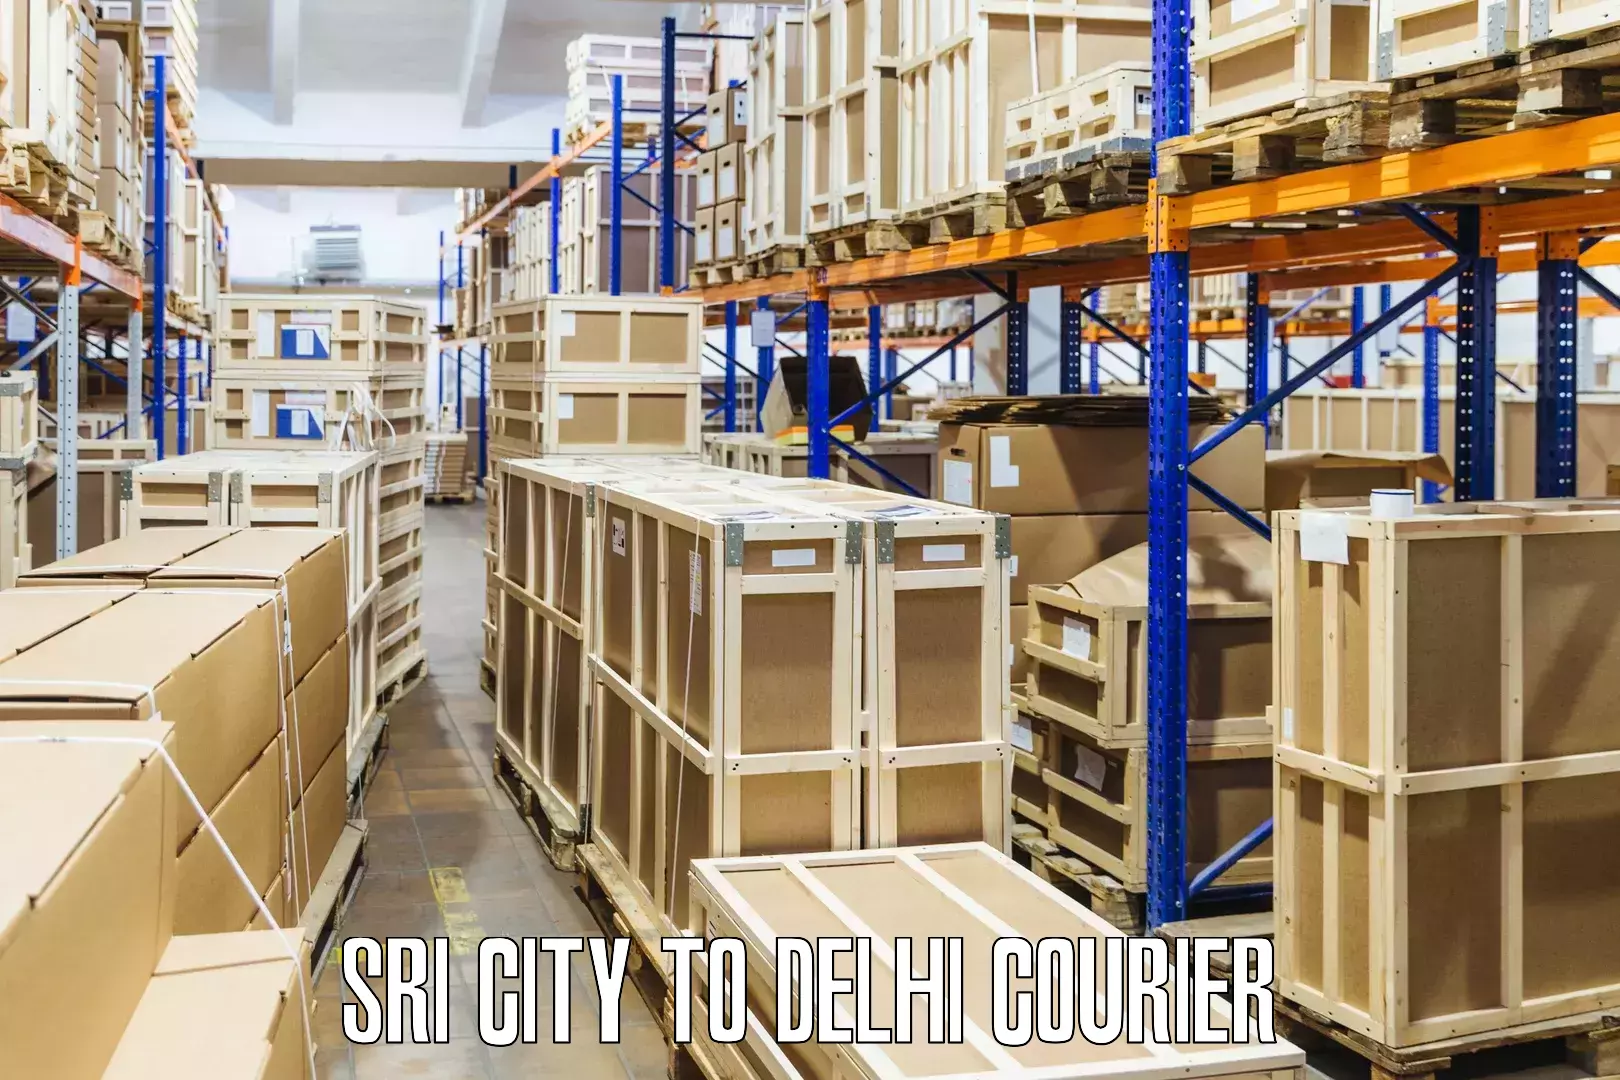 Seamless shipping service Sri City to Krishna Nagar